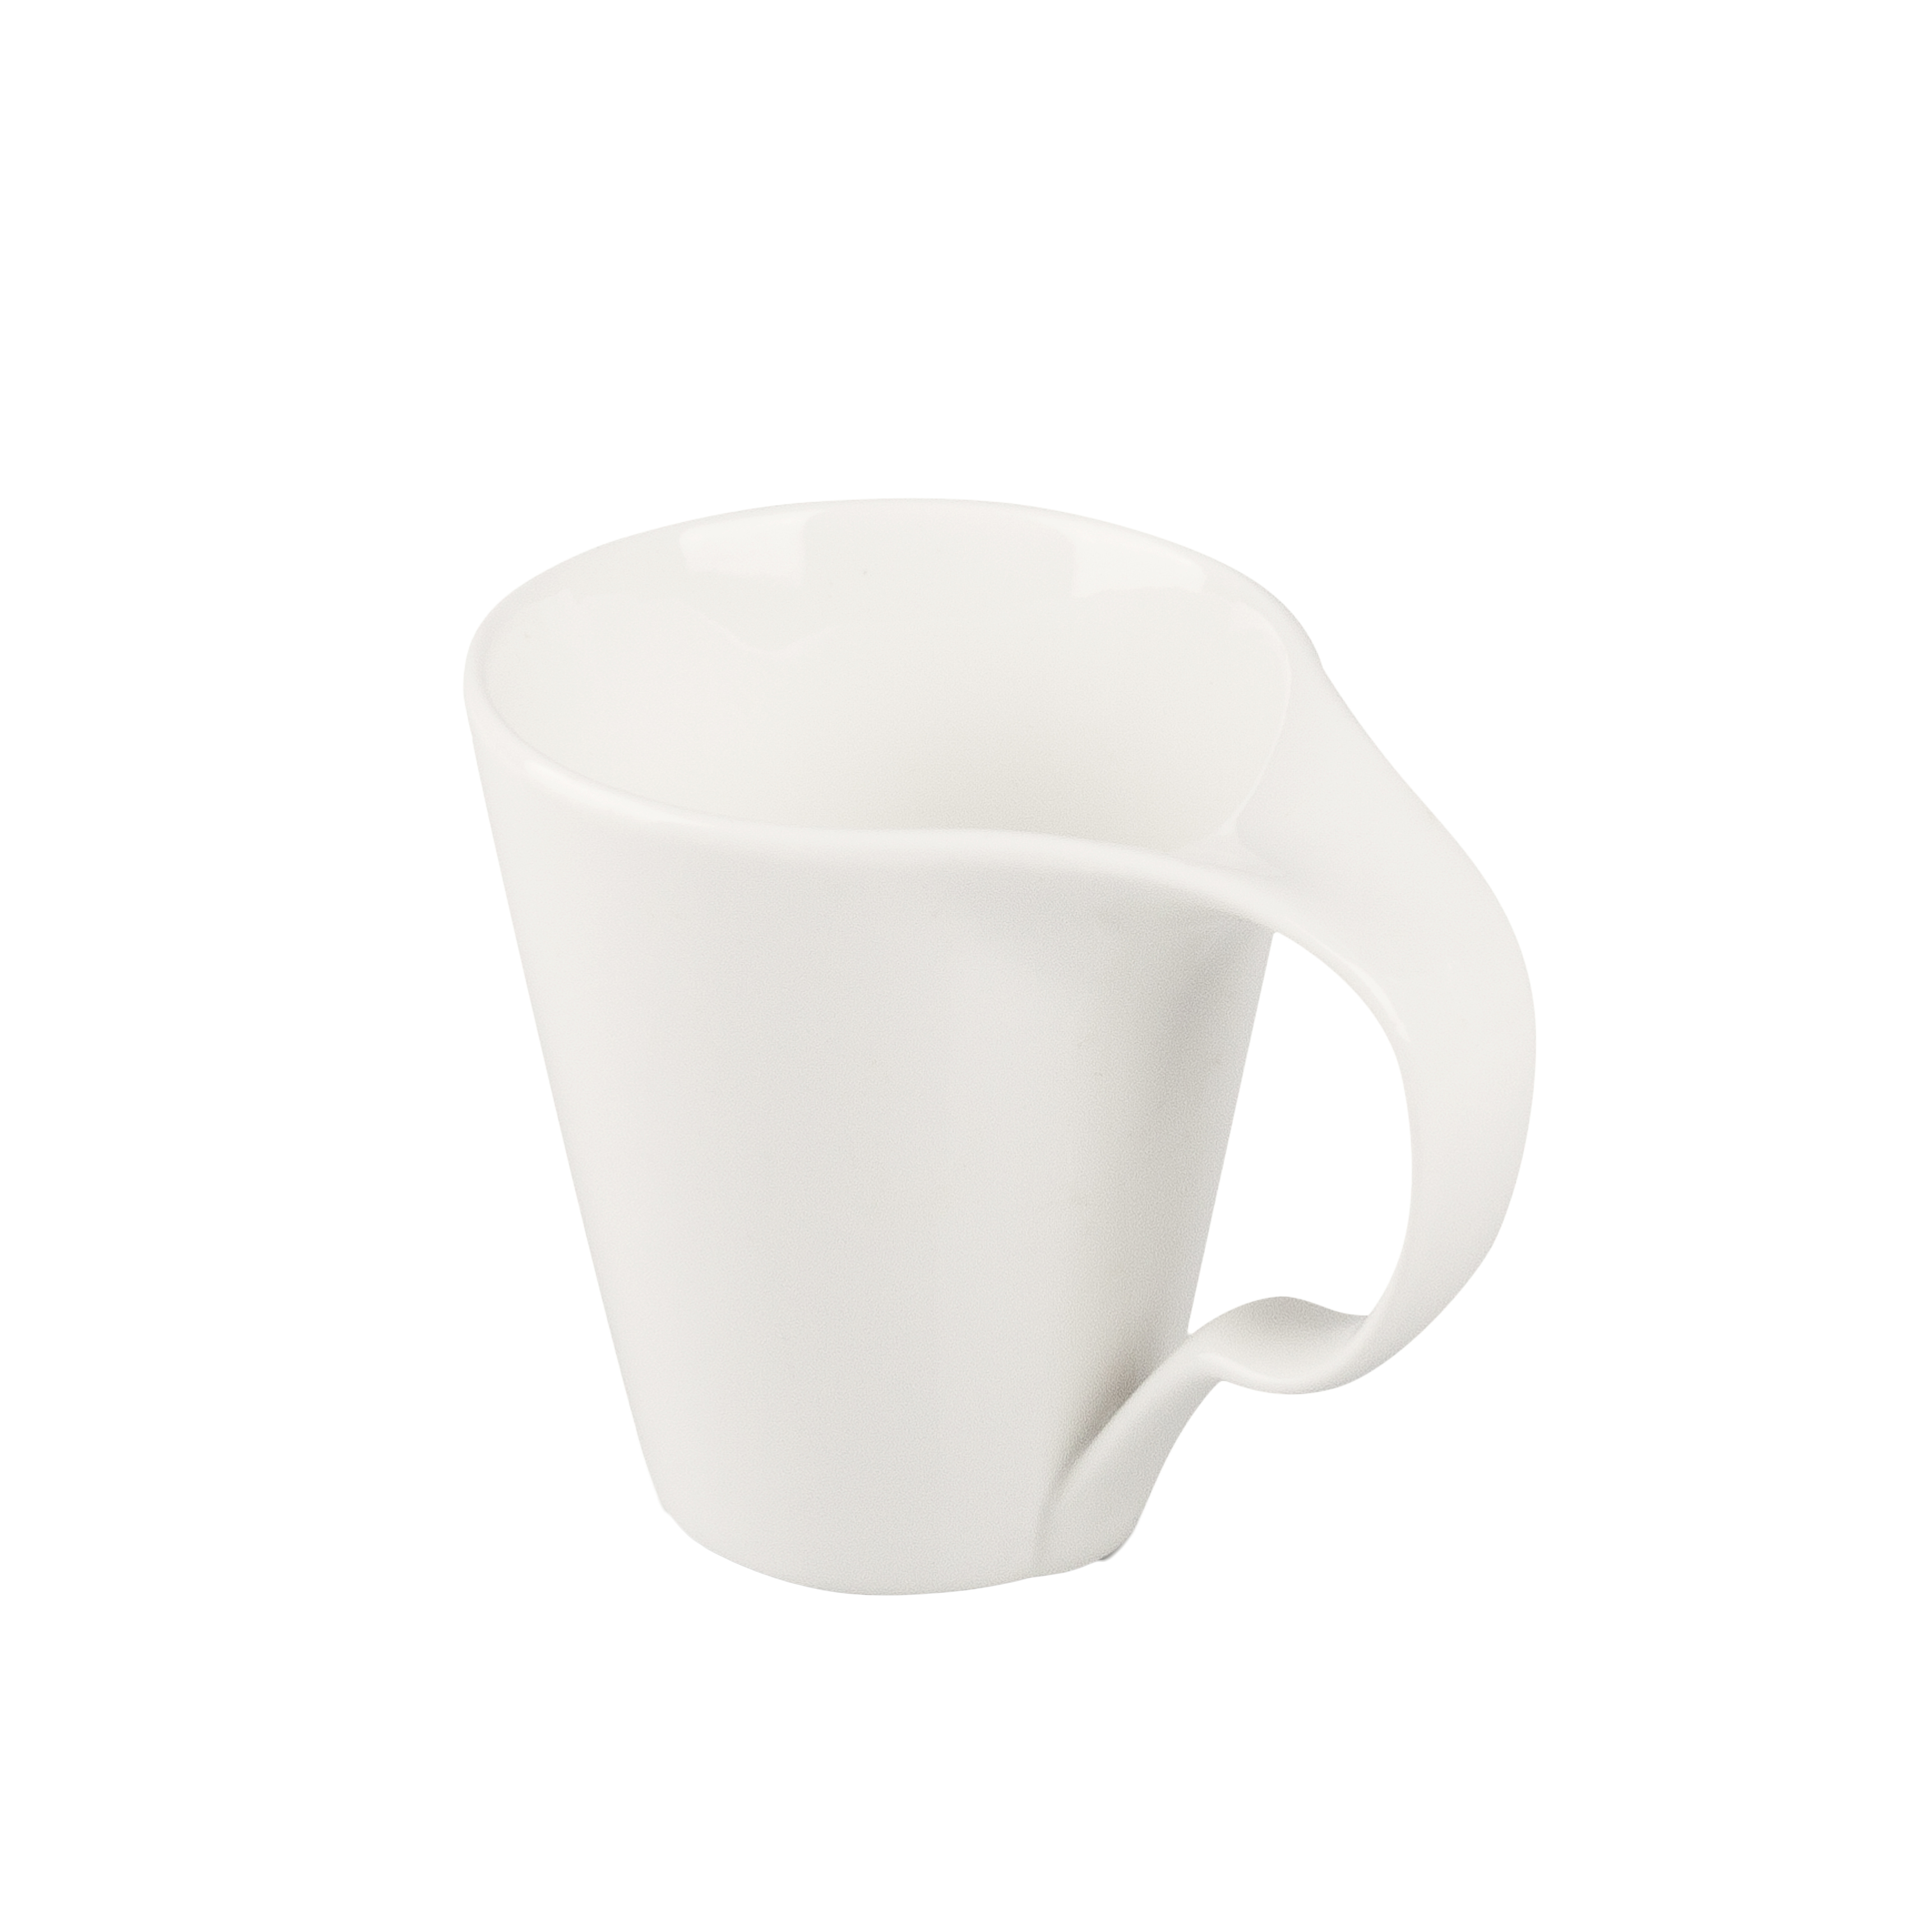  SEWACC Taza de cerámica blanca, 2 unidades, tazas de  sublimación de porcelana, taza de café en blanco liso blanco DIY tazas para  café, té, leche, latte, chocolate caliente, agua, expreso, taza